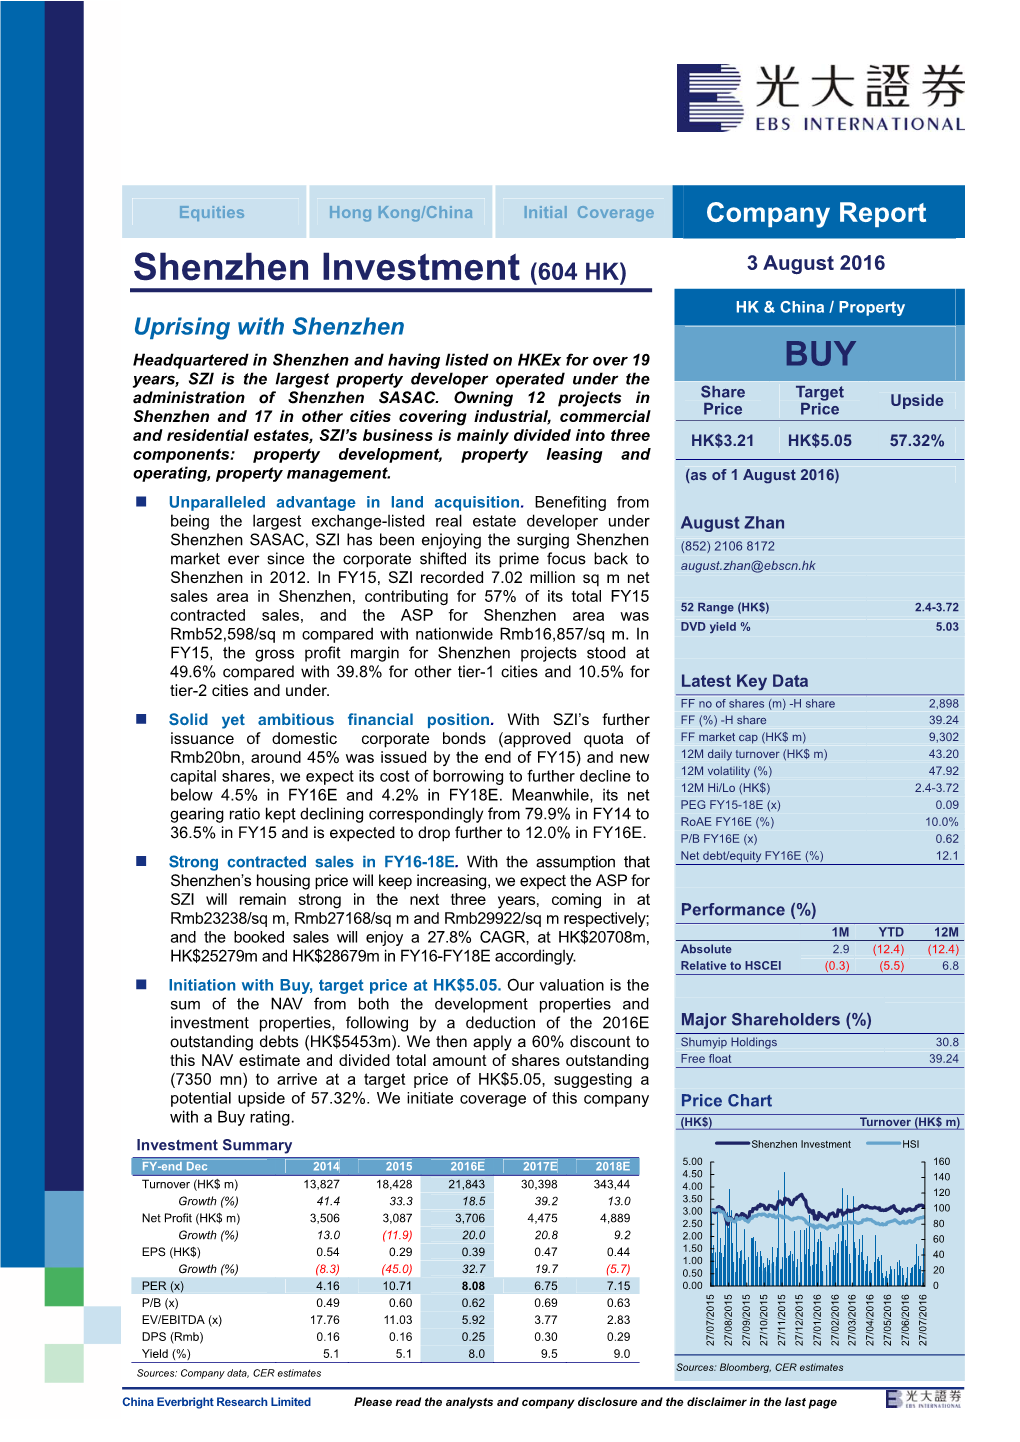 Shenzhen Investment (604